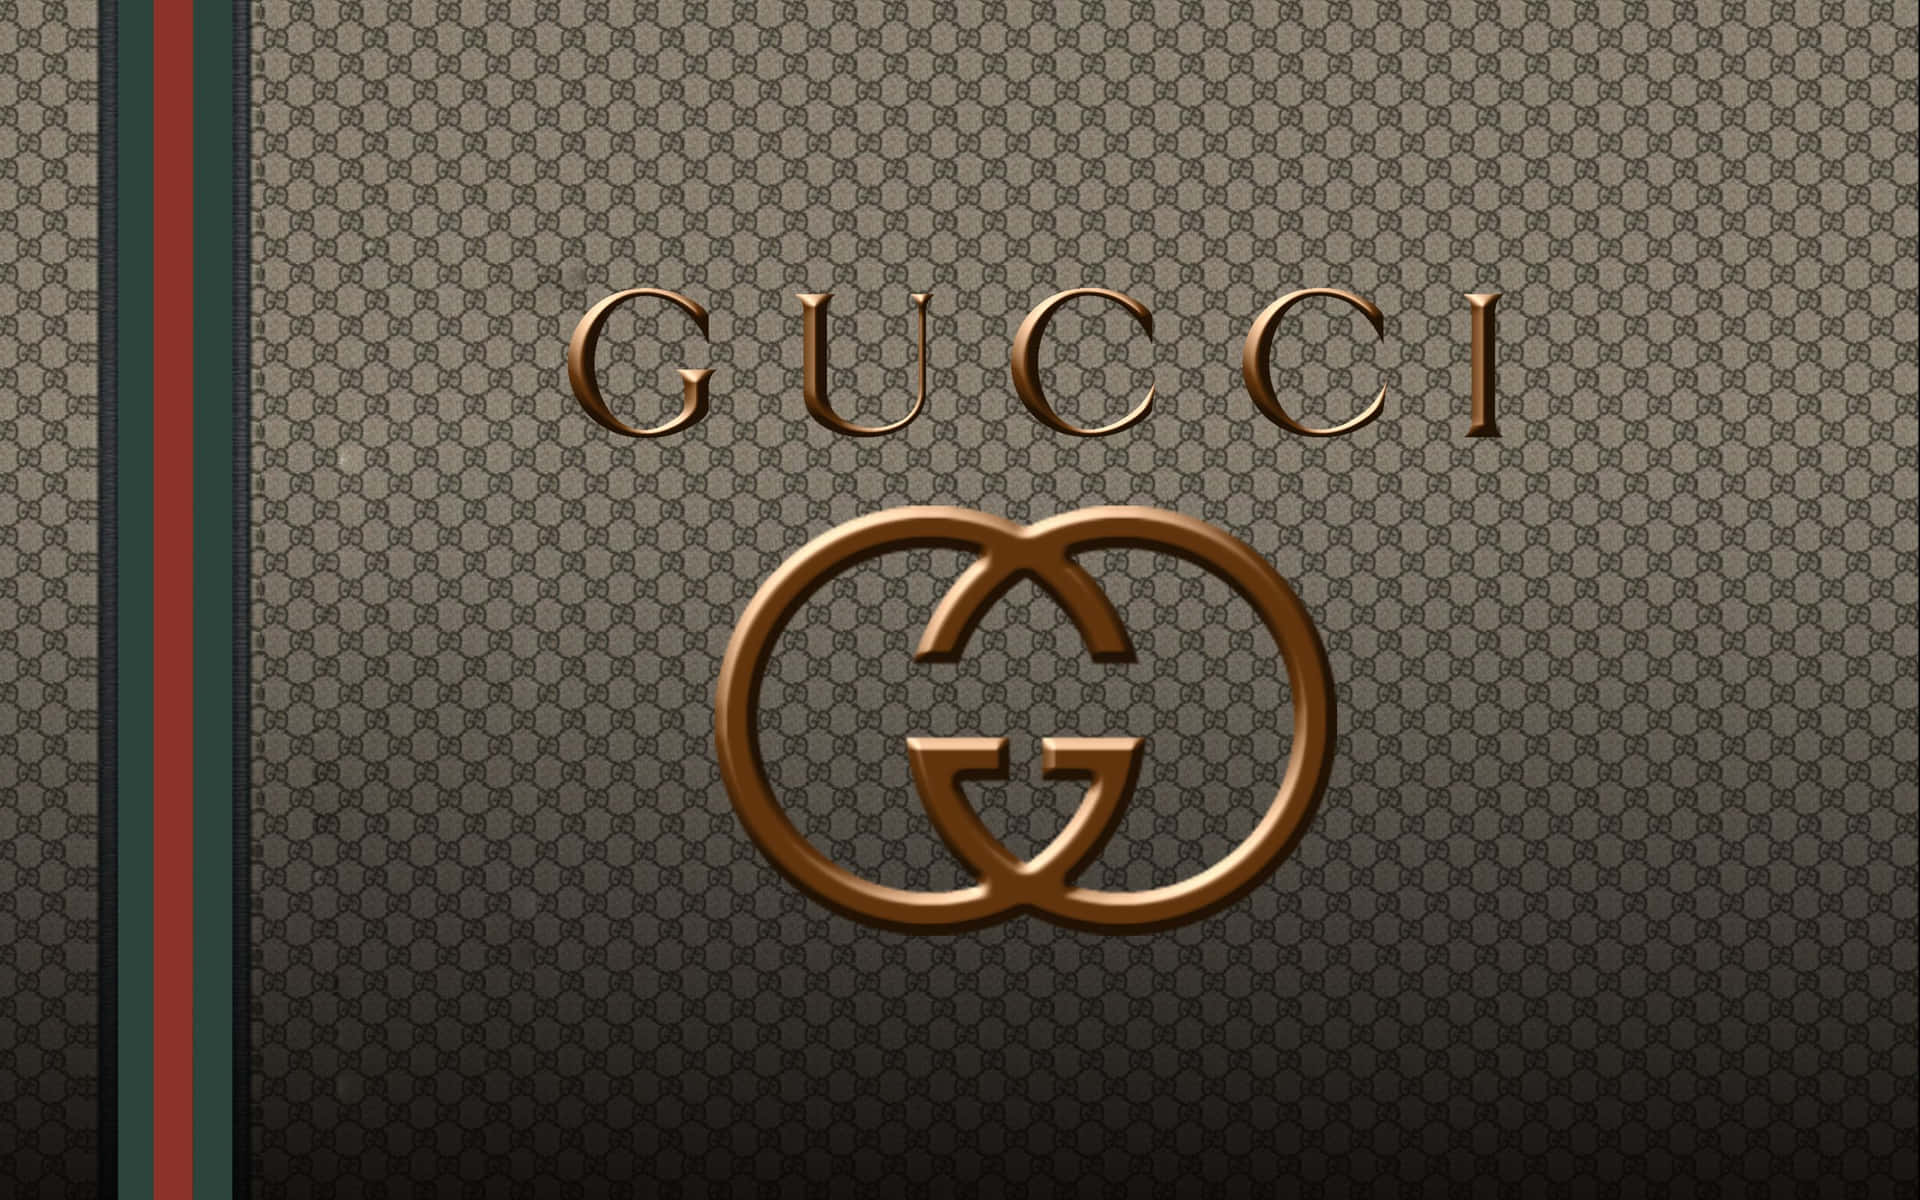 Exquisiterstil Der Modemarke Gucci Als Hintergrund